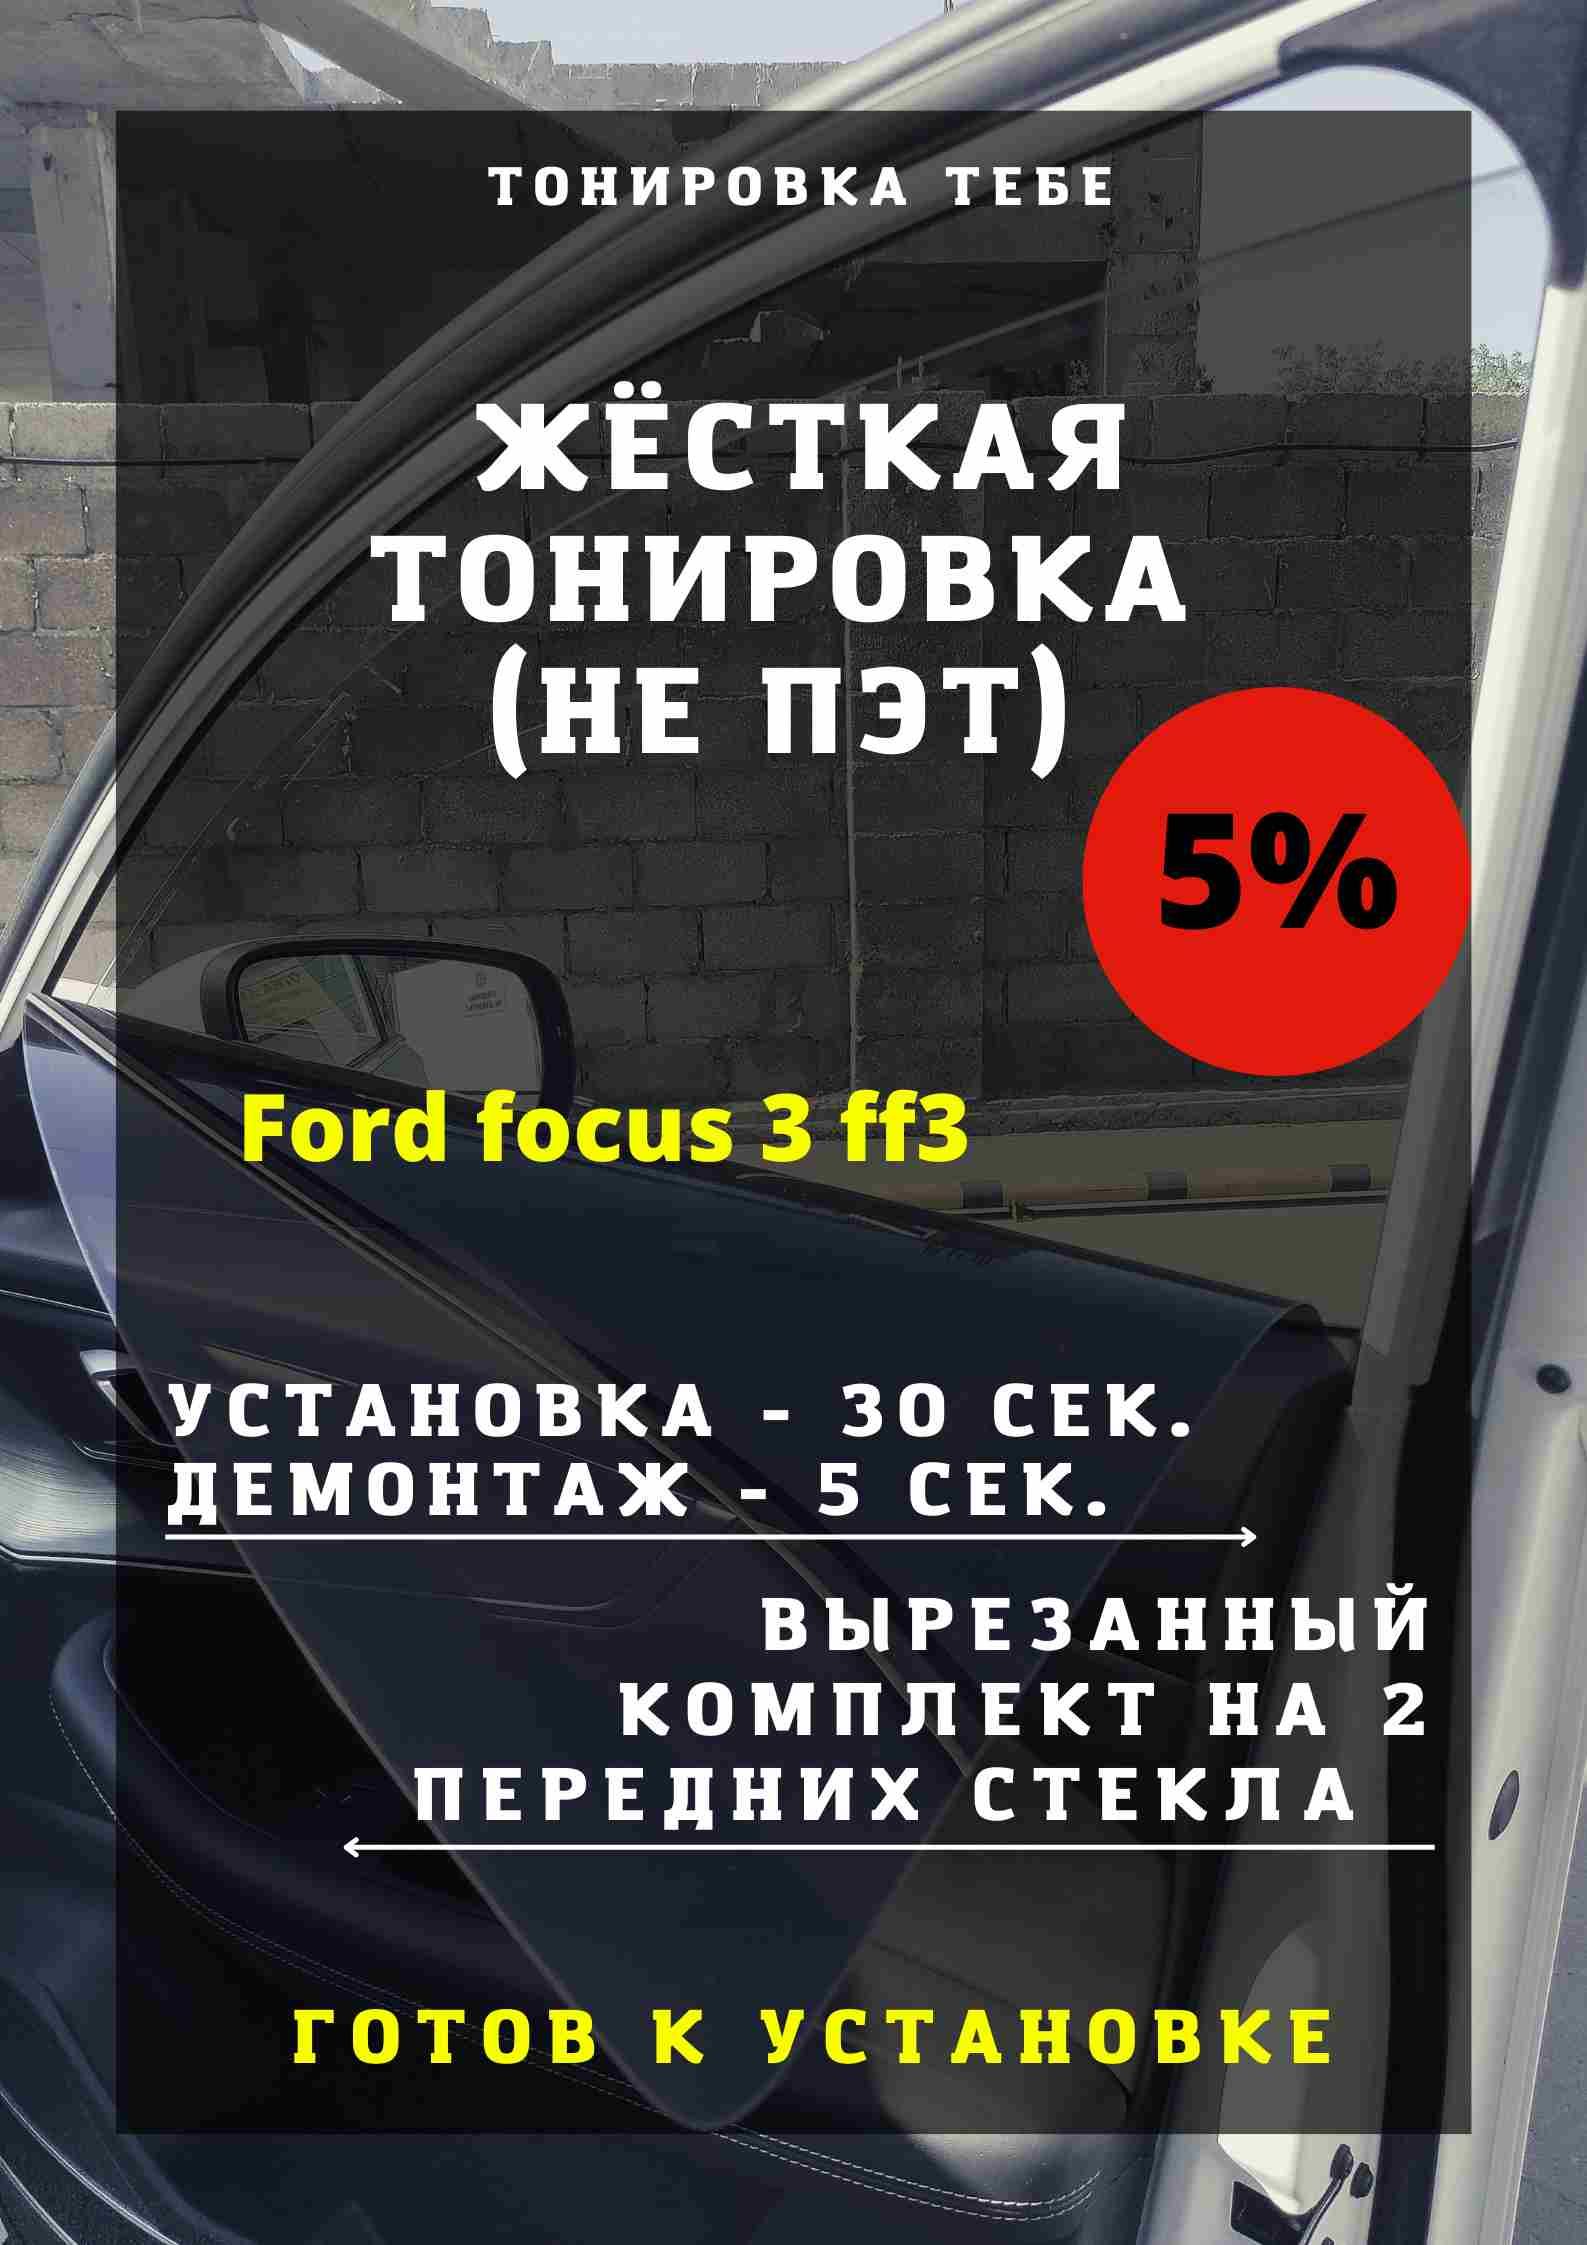 Ford Focus 3 - тонировка авто, светопропускаемость 95%